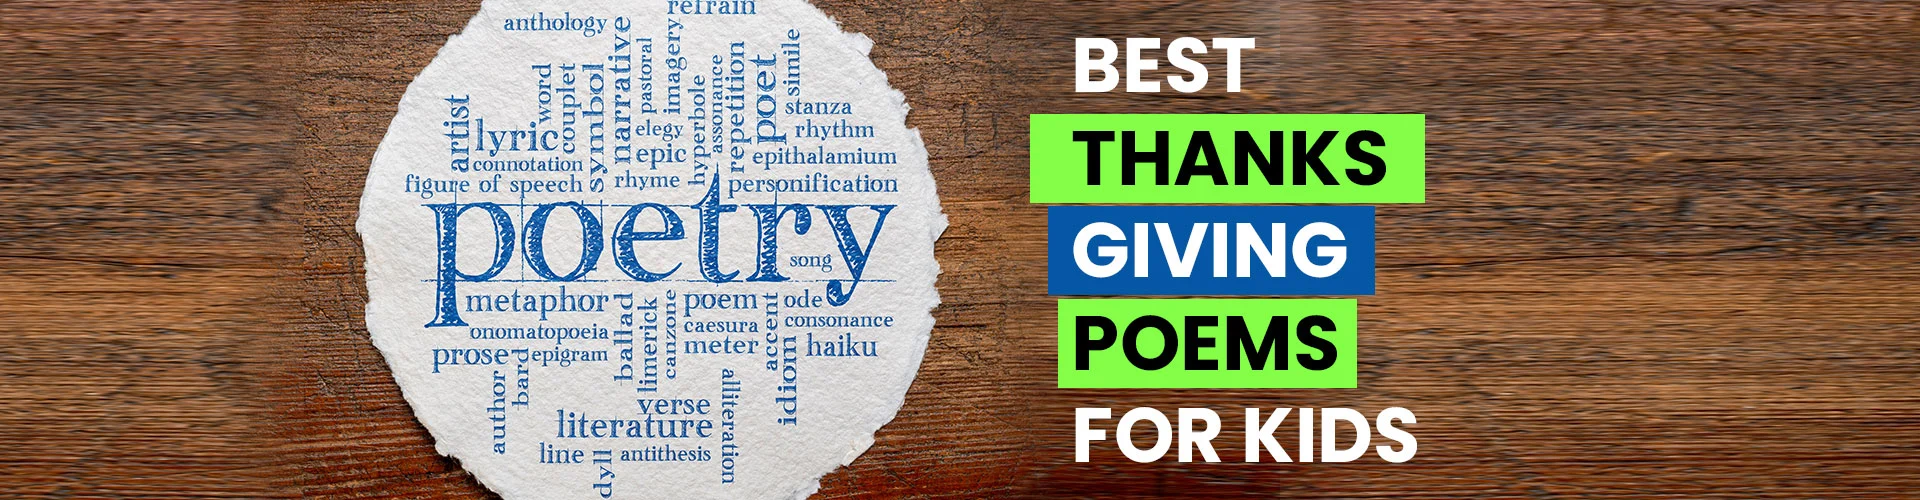 Best Thanksgiving Poems For Kids